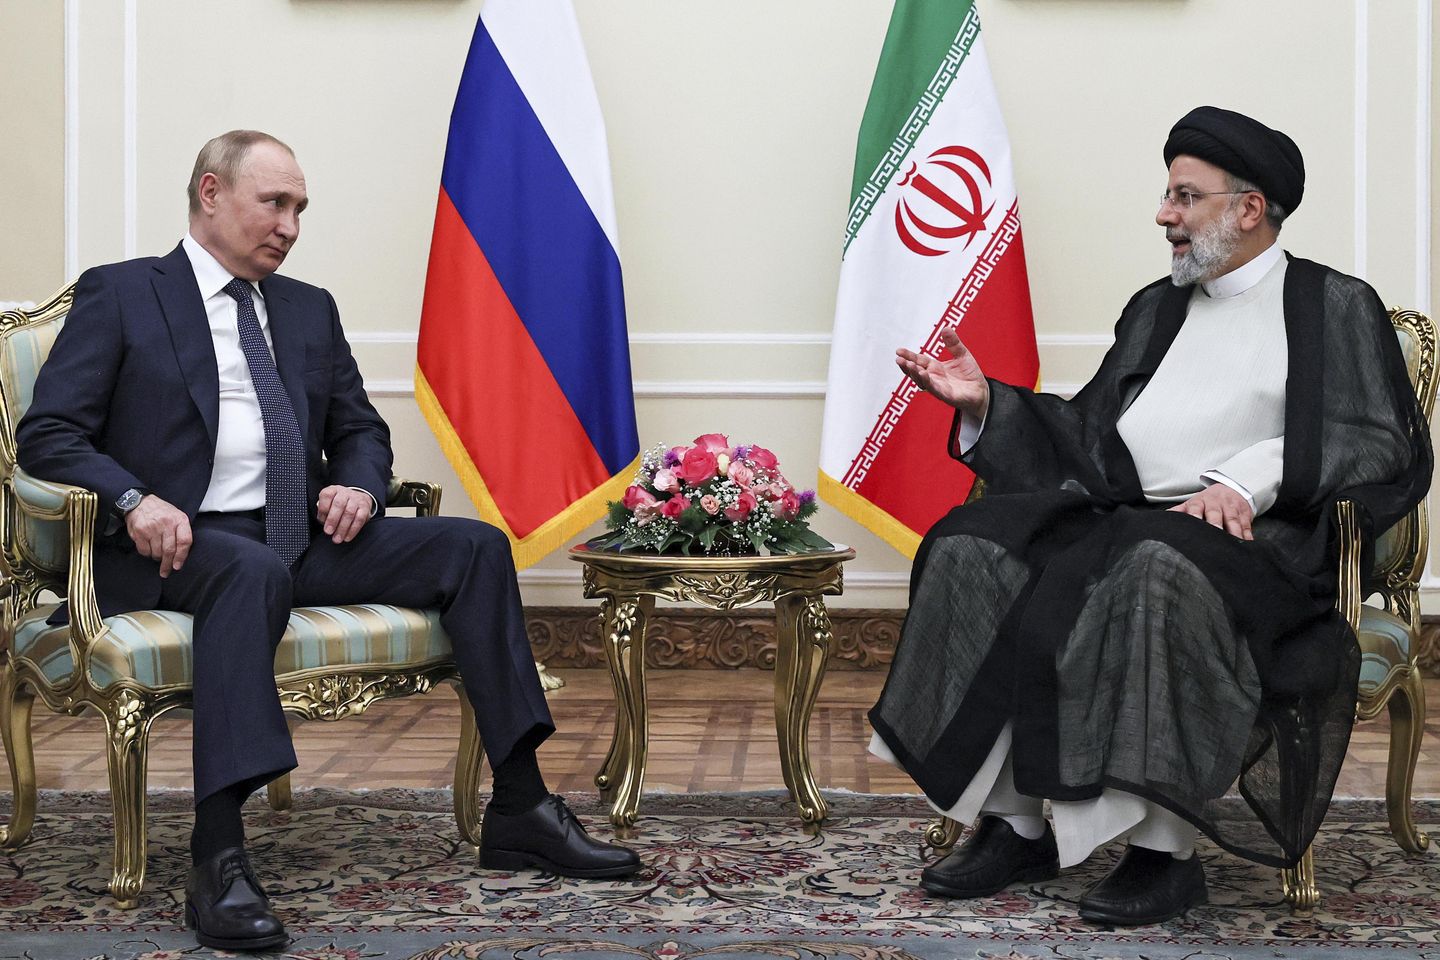 Tehlikeli bir ittifak: İran, Ukrayna savaşında Rusya'nın yanında yer alarak Batı için riskleri artırıyor